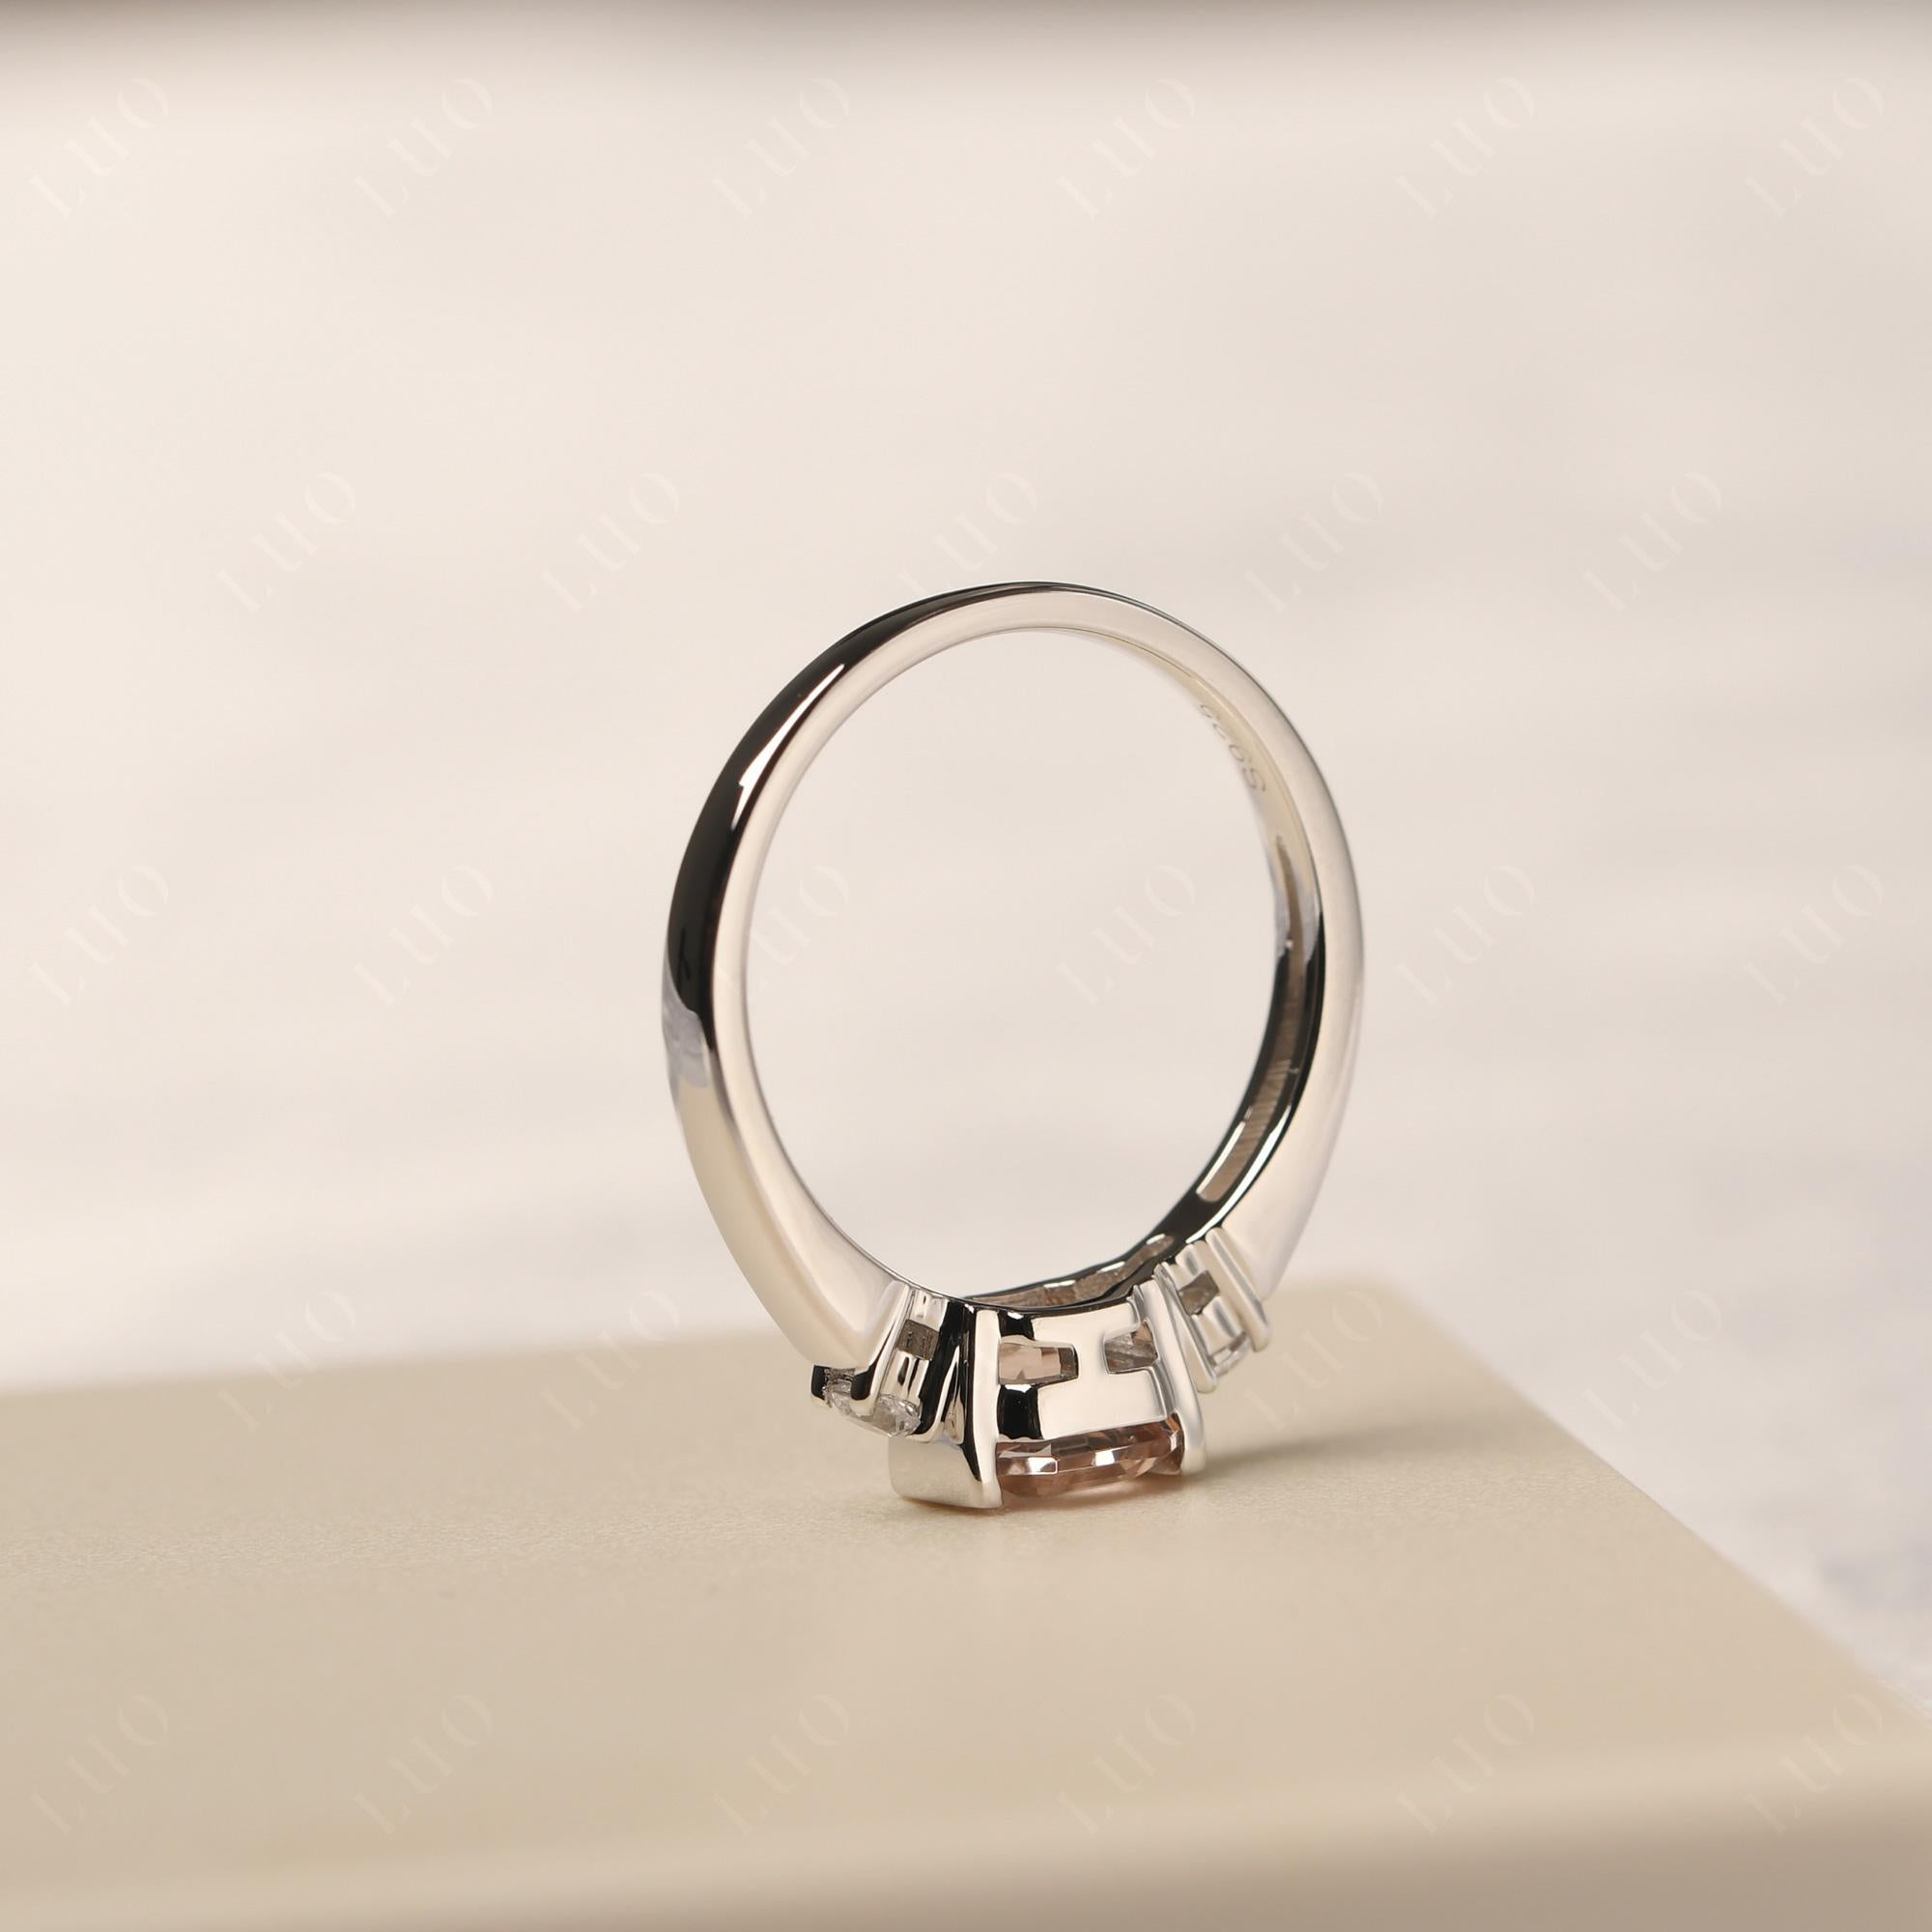 Morganite Half Bezel Set Asscher Cut Ring - LUO Jewelry